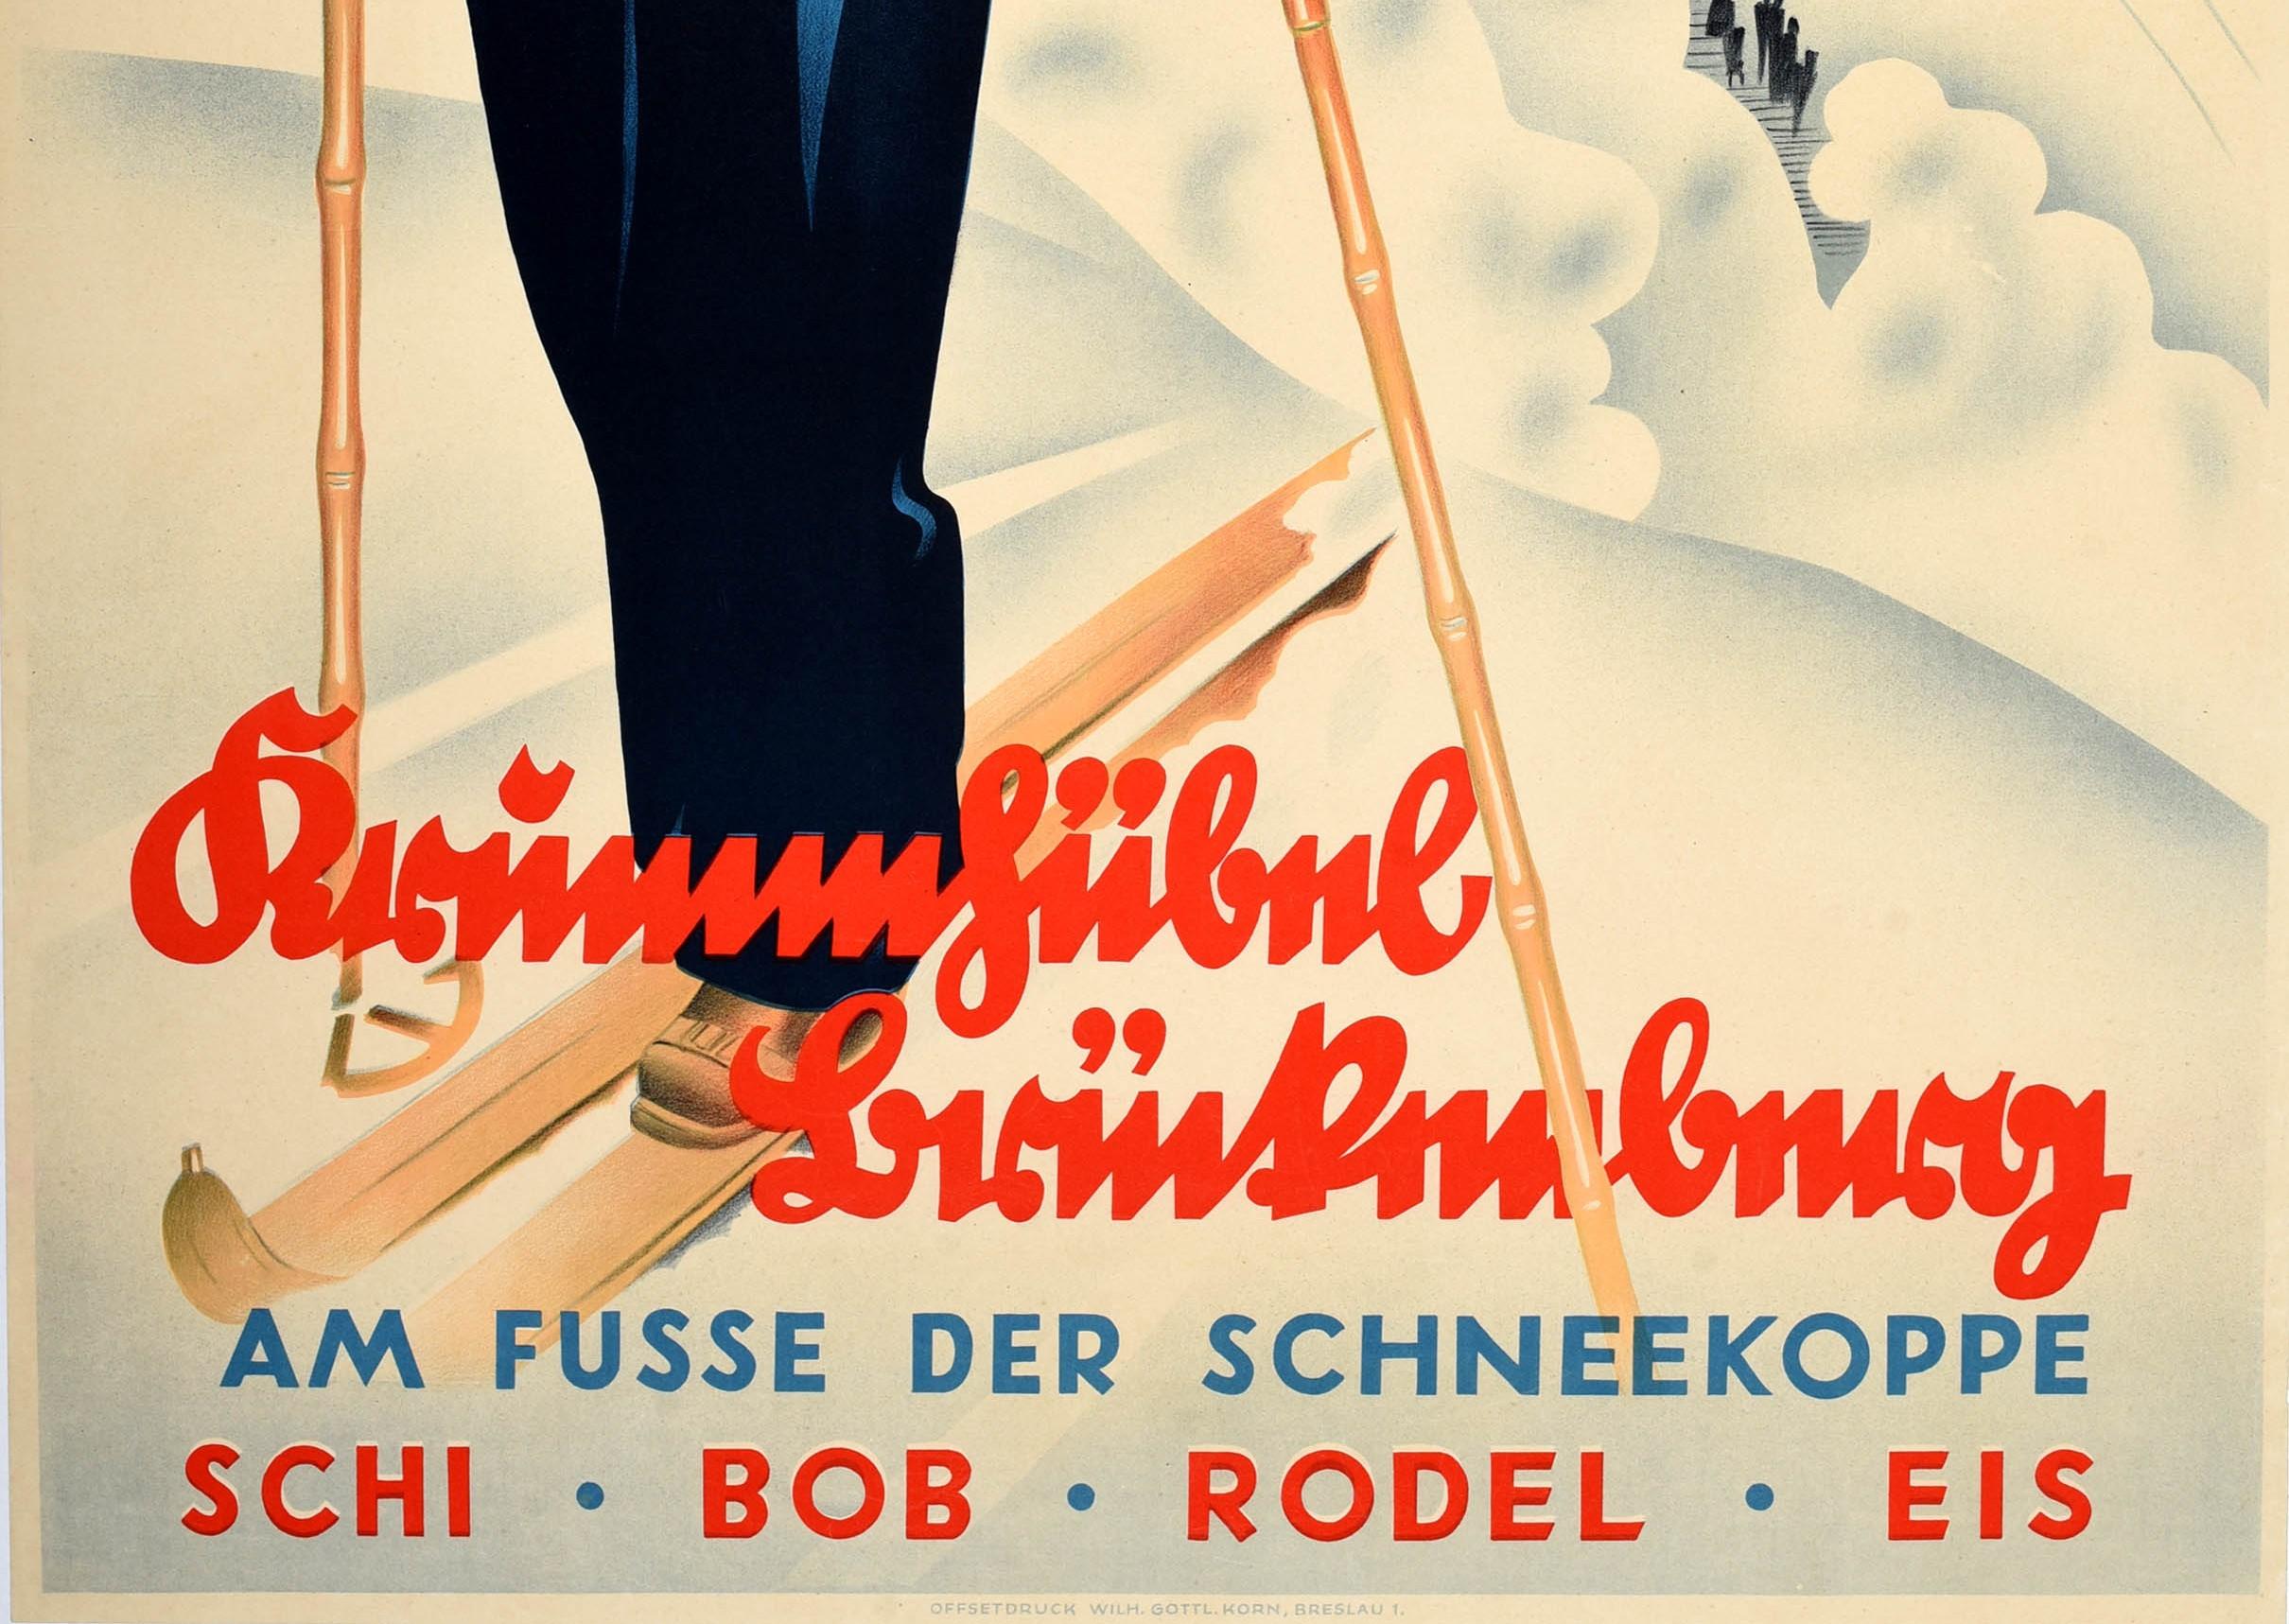 Original Vintage Ski- und Wintersport-Reiseplakat für das Krummhubel Mountain Resort am Fuße der Schneekoppe Ski Bob Rodel Eis / Krummhubel Bruckenberg am Fusse der Schneekoppe Schi Bob Rodel Eis. Die Schneekoppe / Riesenkoppe ist der höchste Punkt